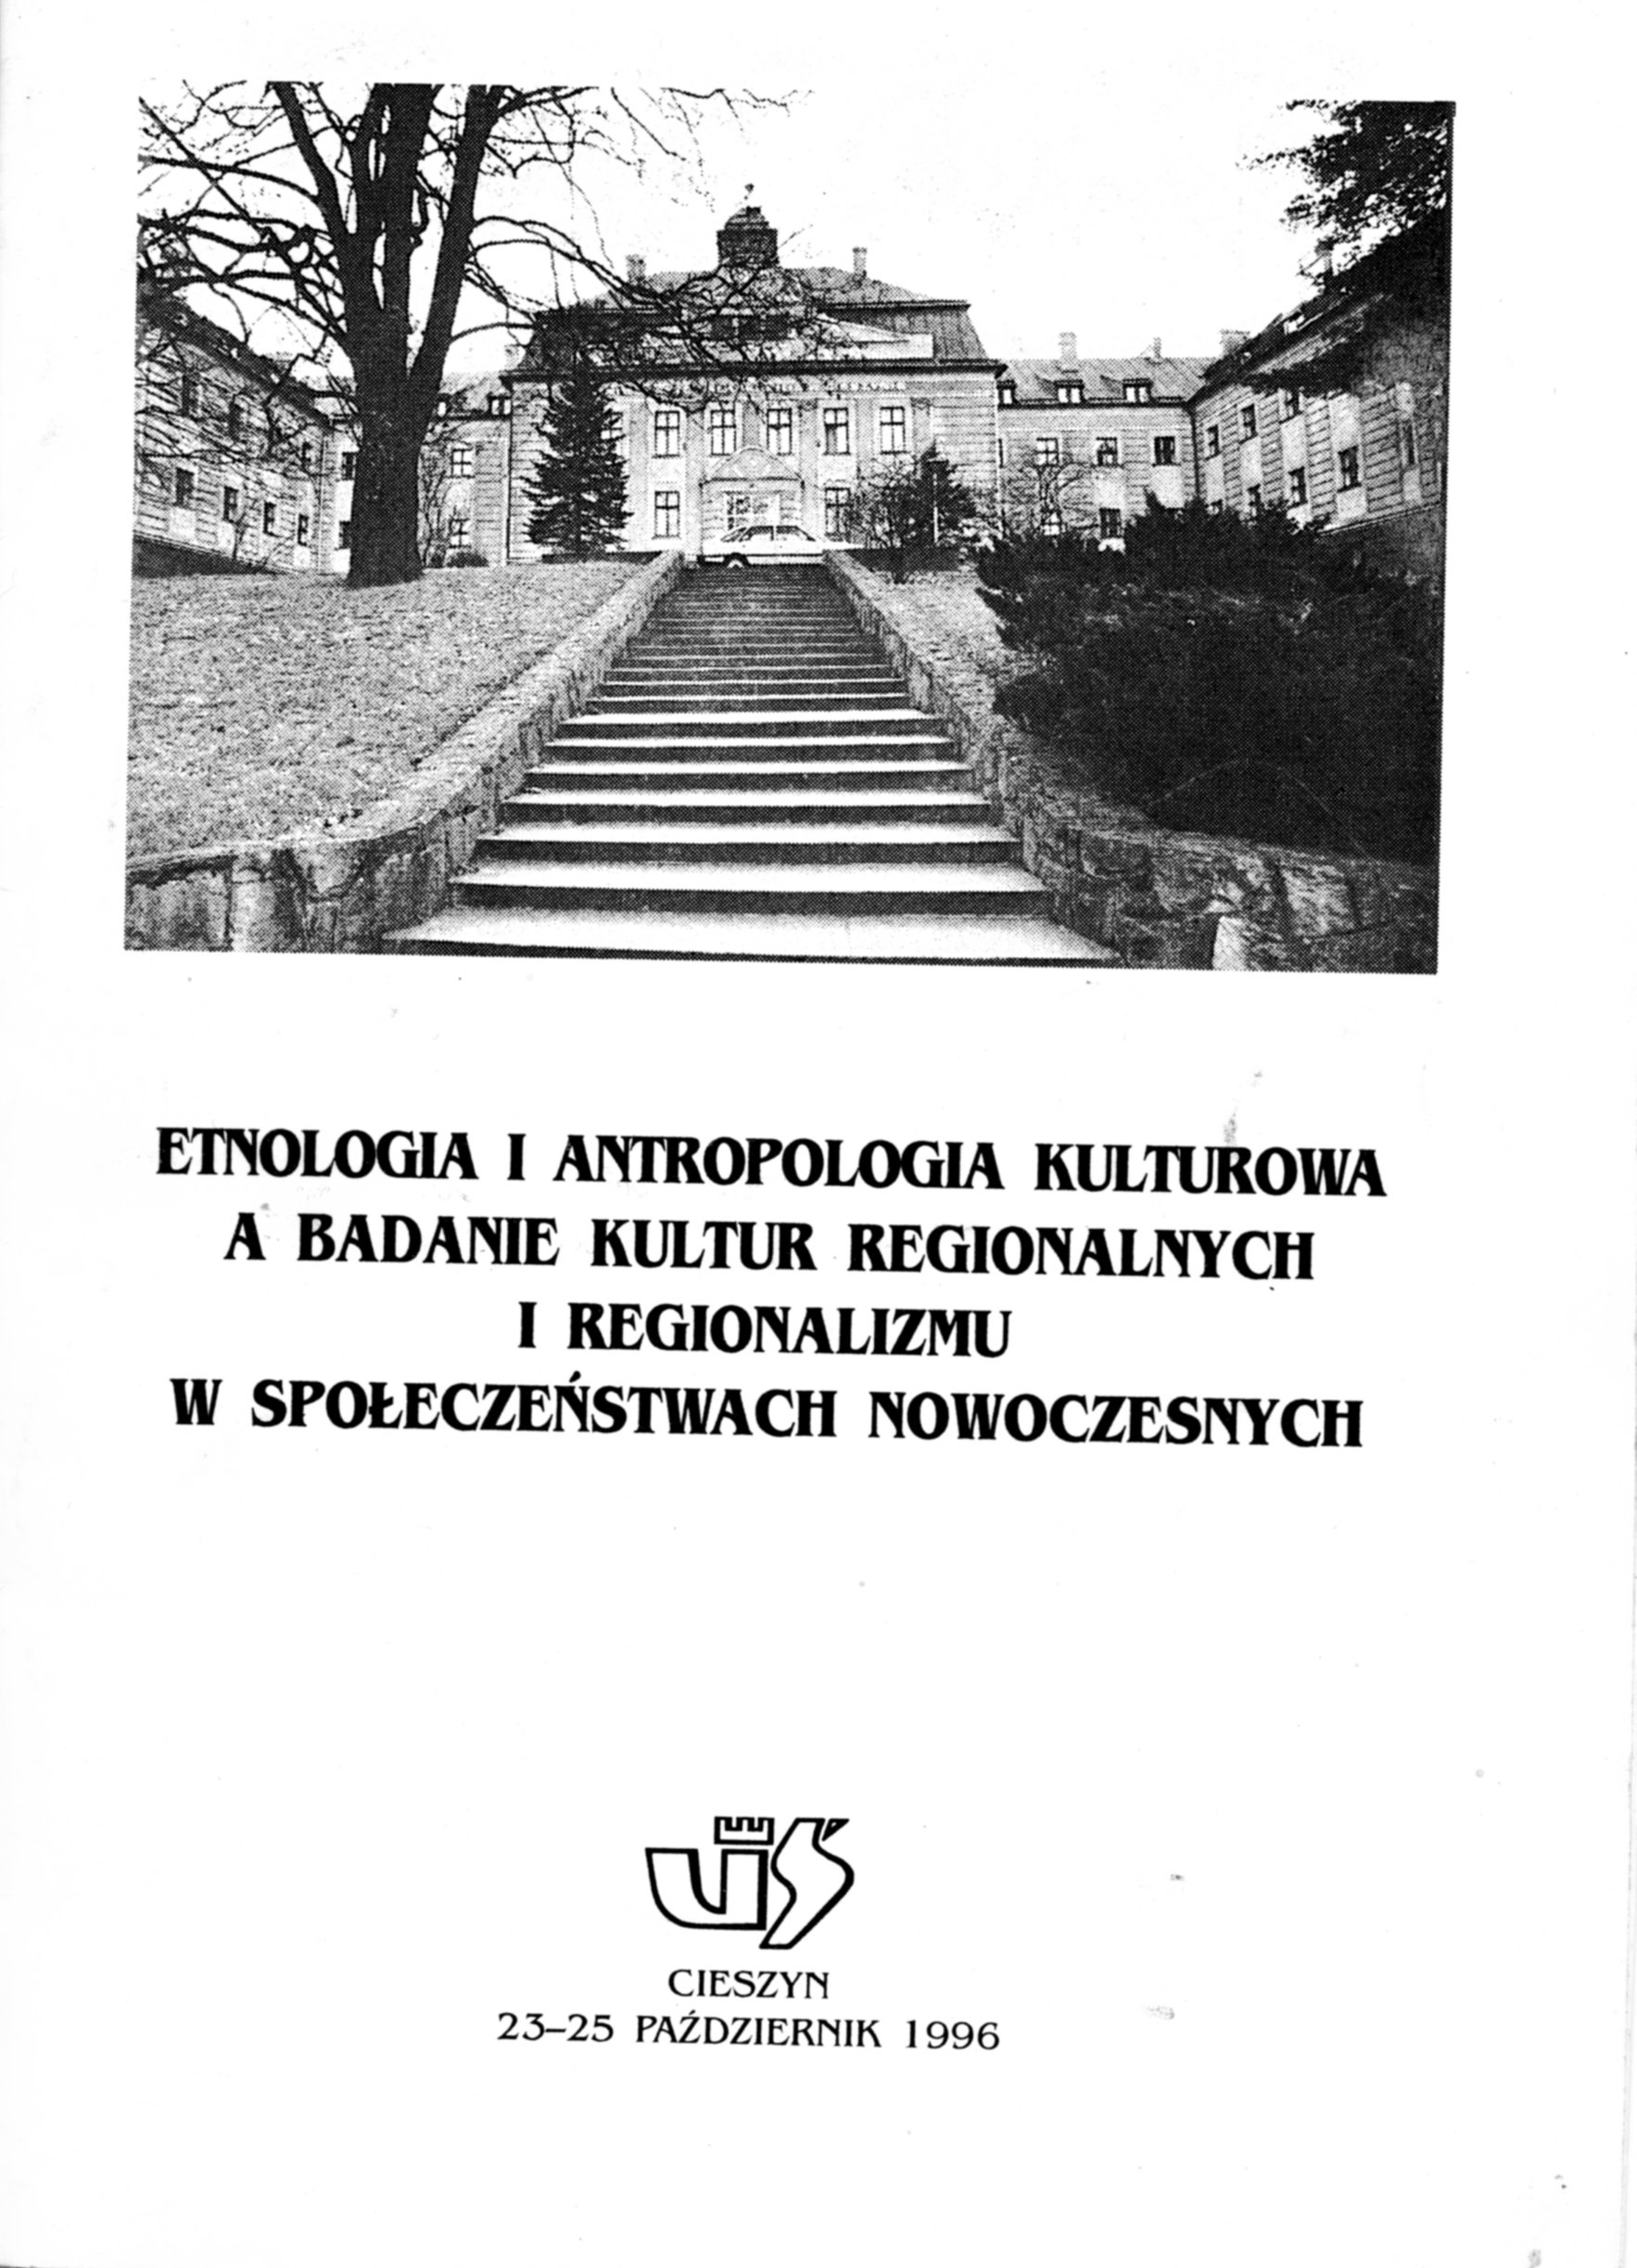 Konferencja-1996-Cieszyn-program